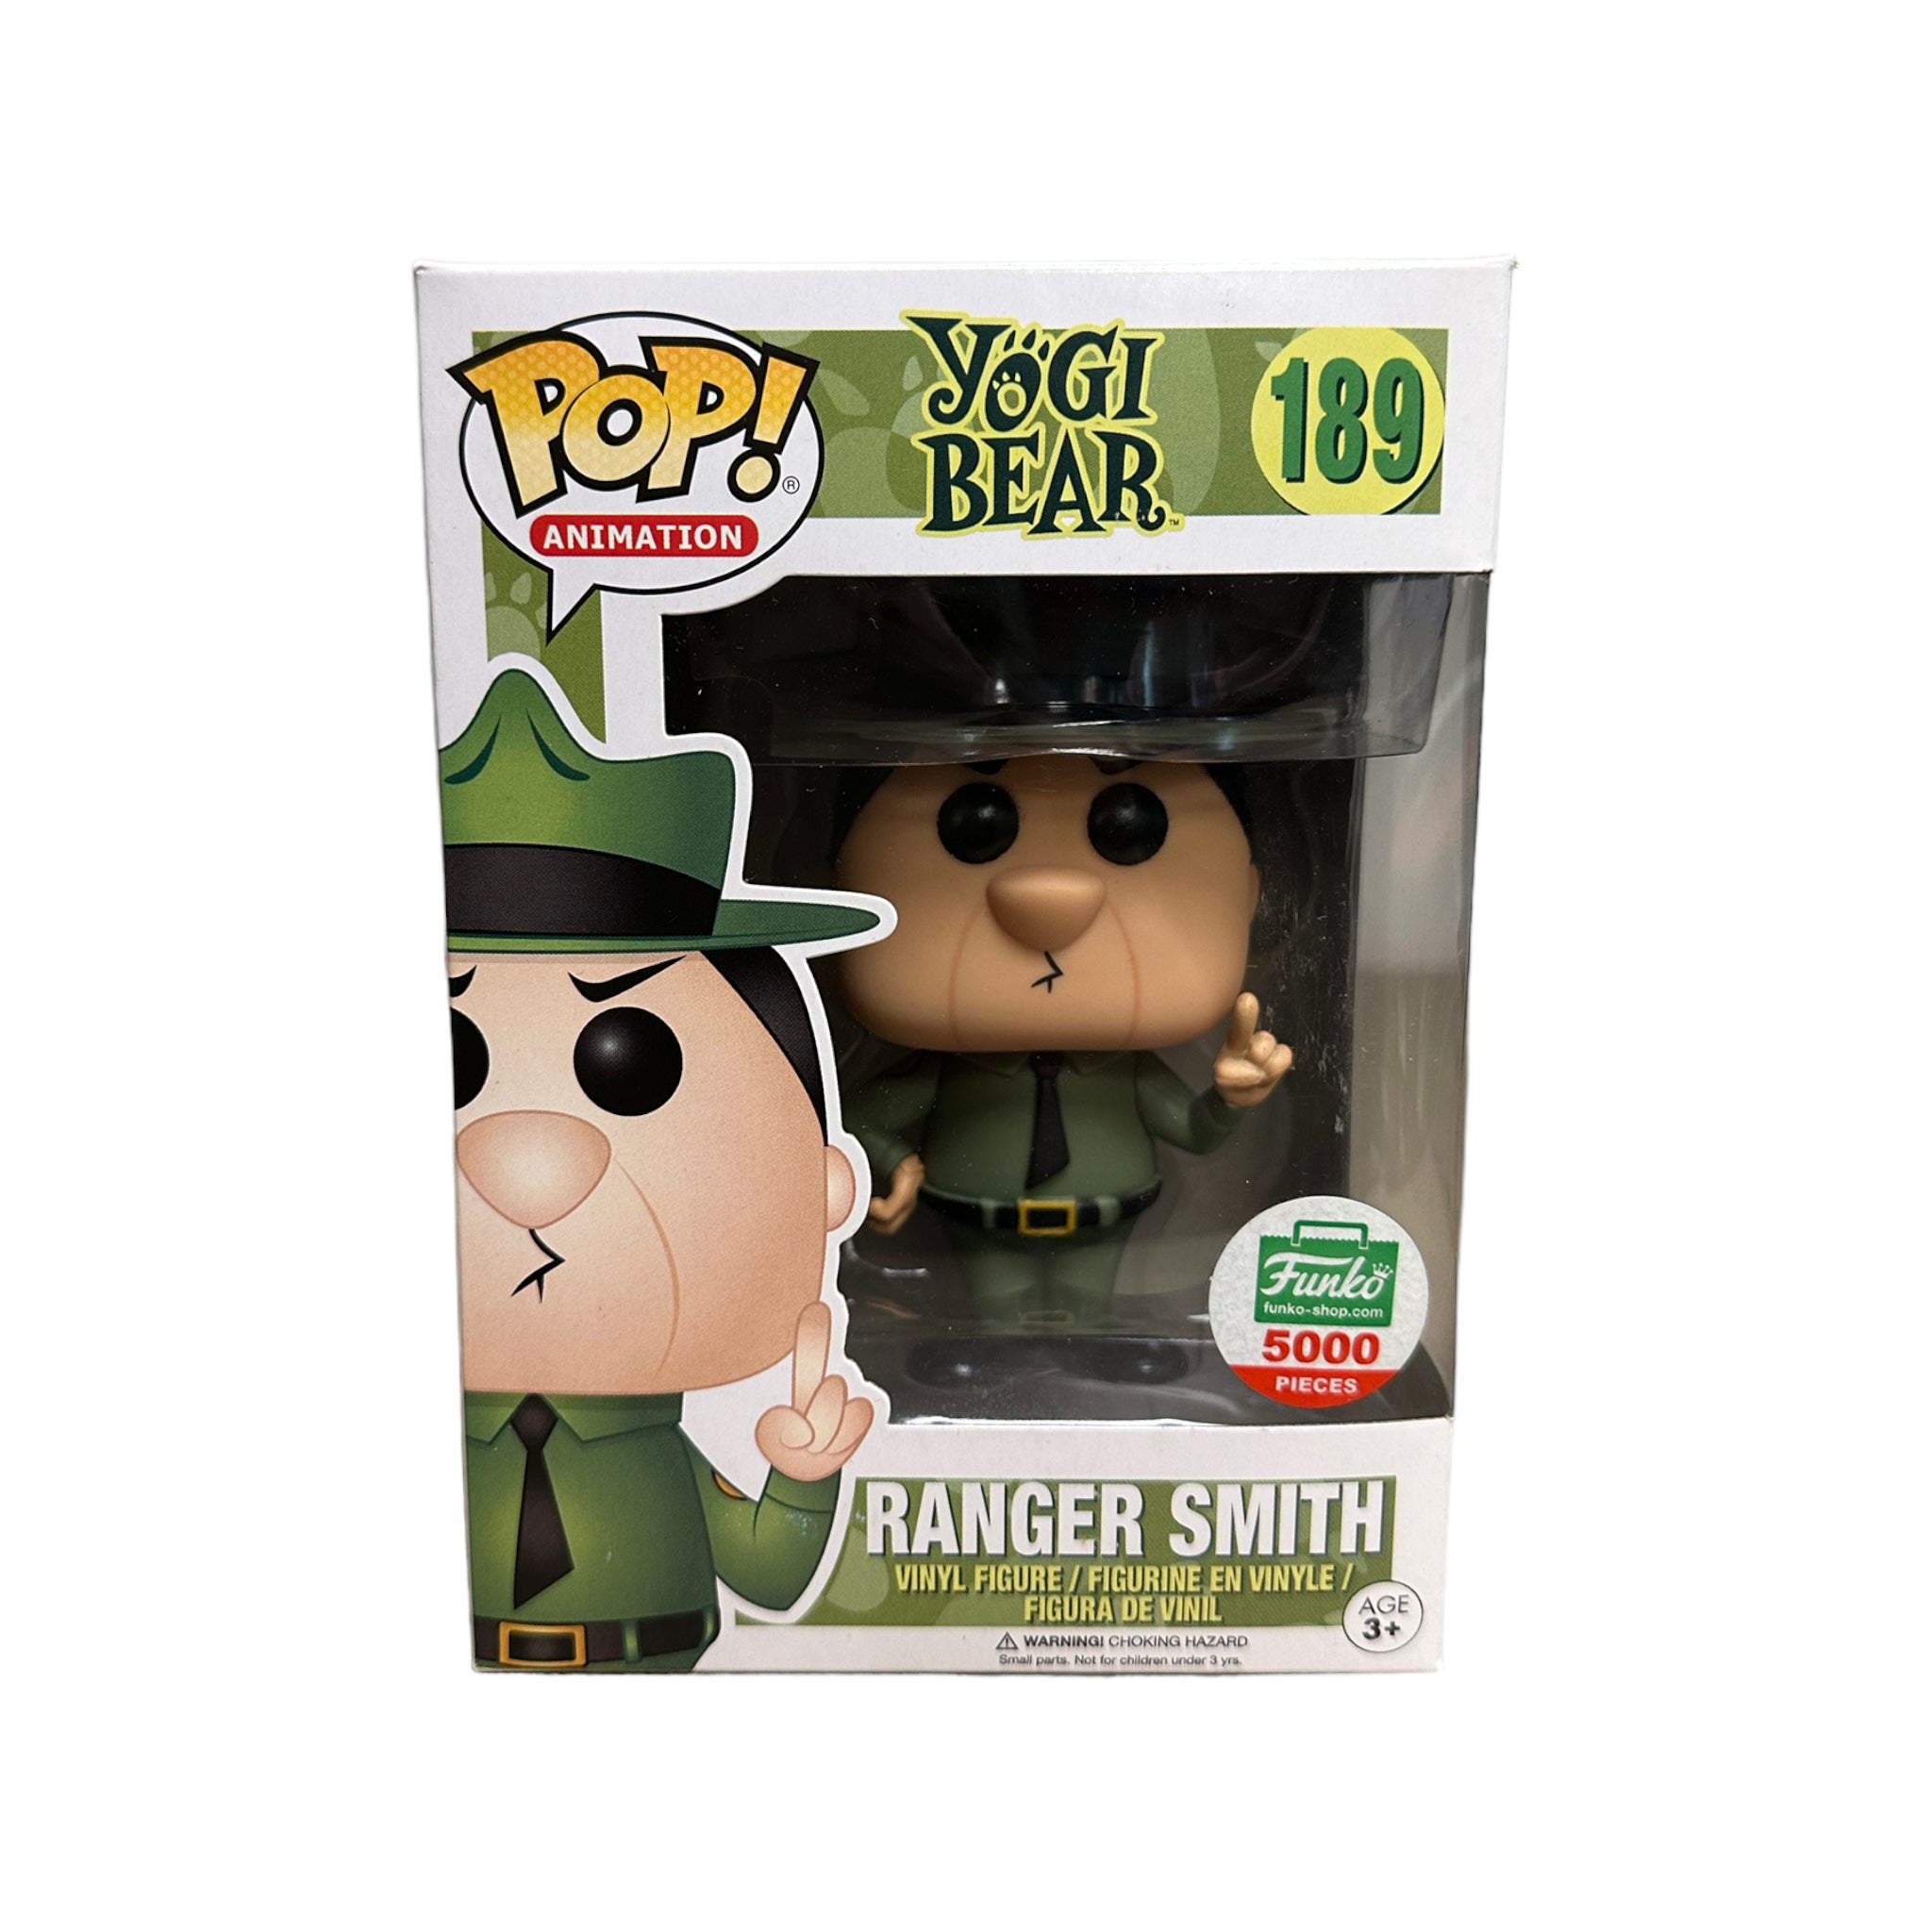 Ranger Smith #189 Funko Pop! - Yogi Bear - Funko Shop Exclusive LE5000 Pcs - Condition 7.5/10